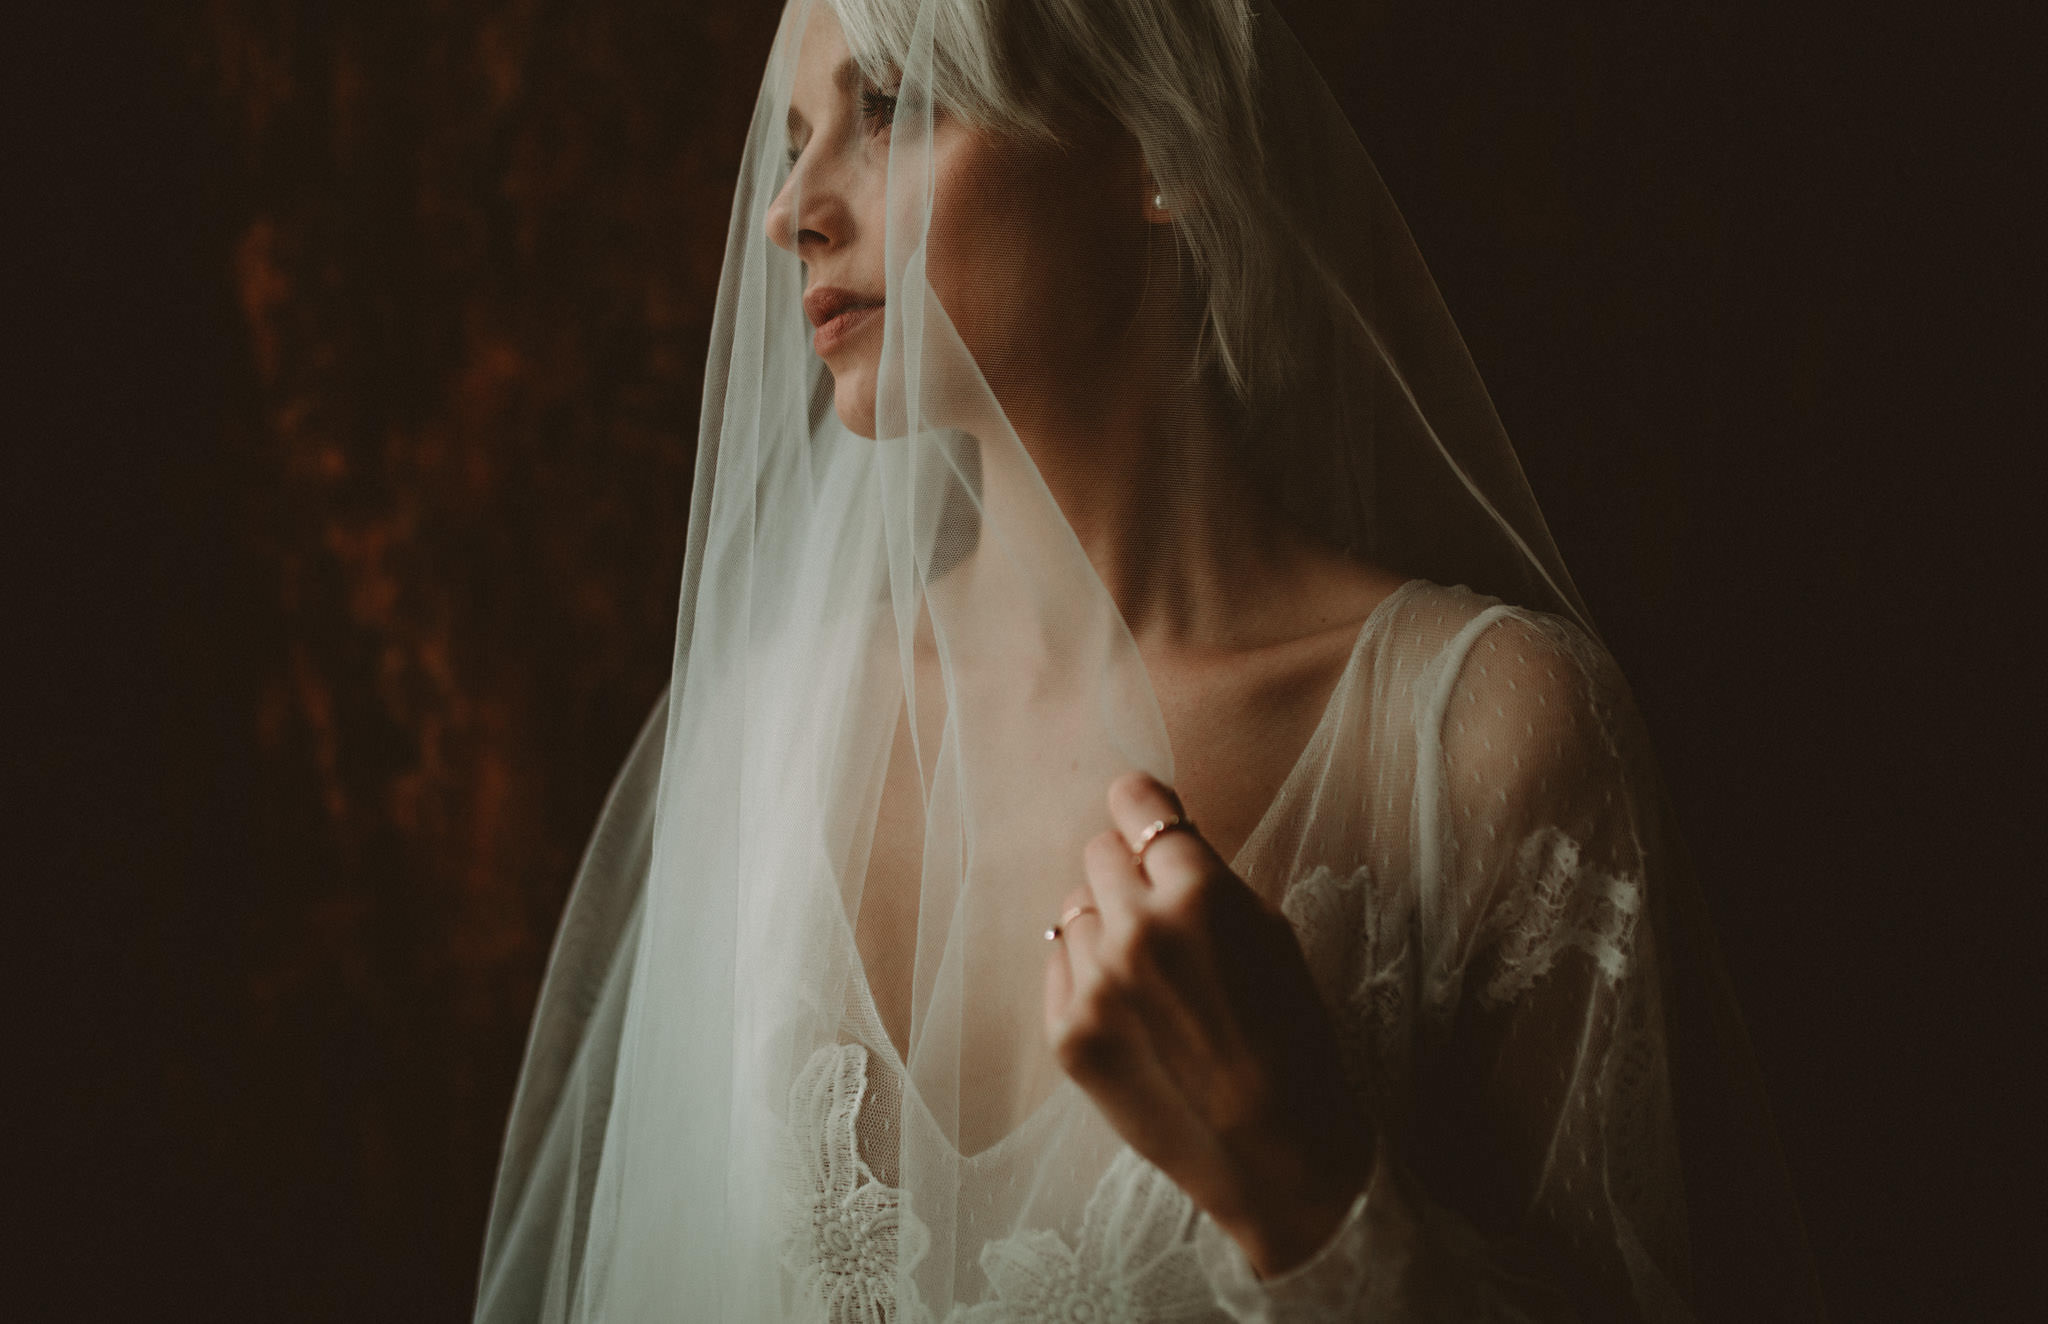 Portraits of a bride